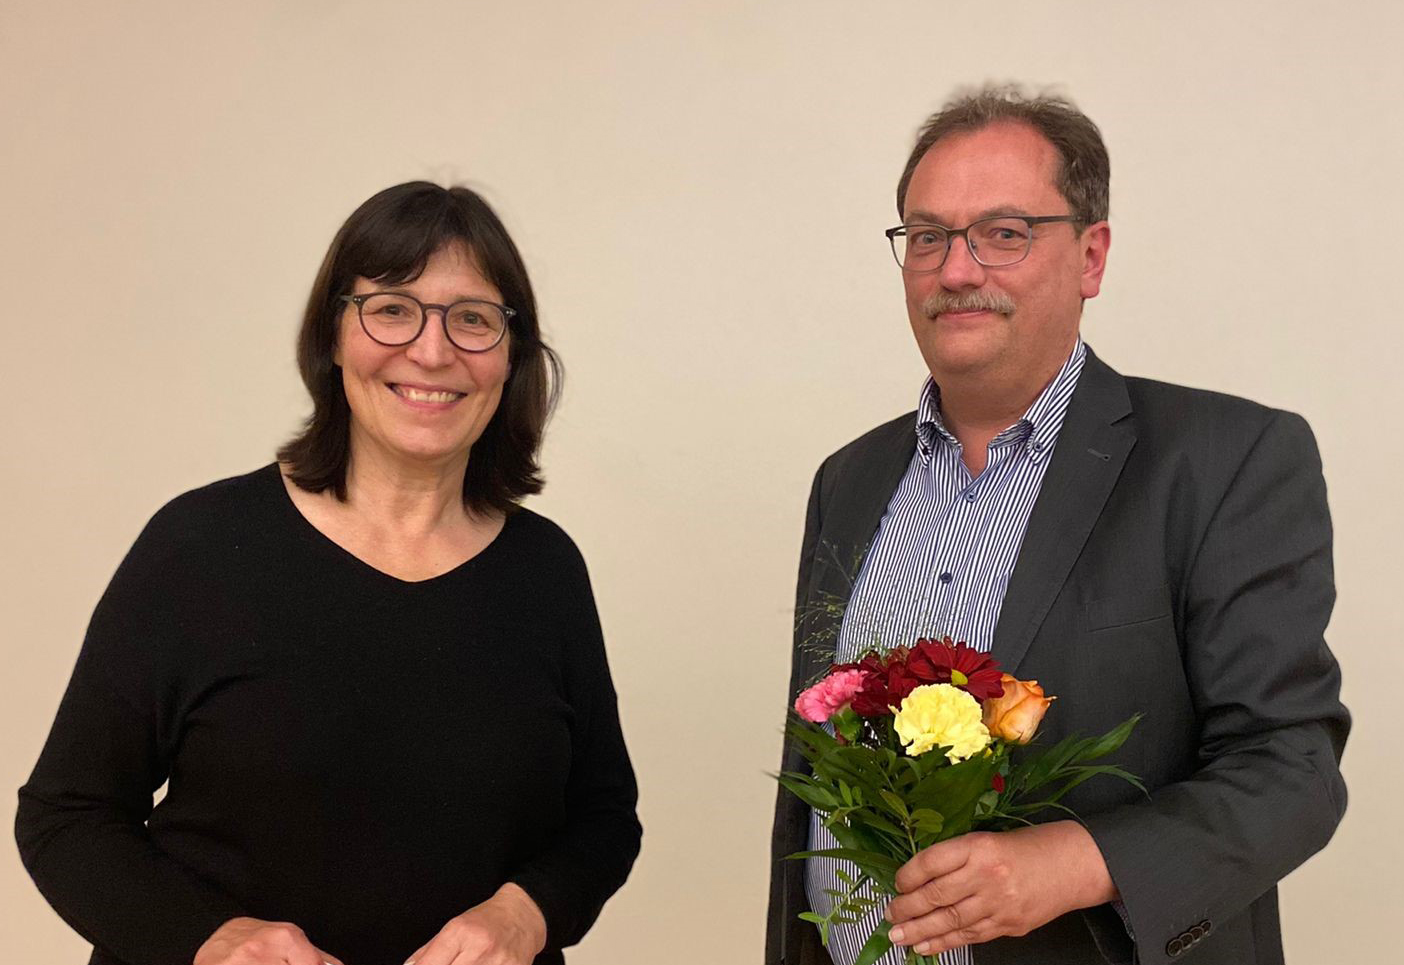 AWO-Landesvorsitzende Petra Rottschalk und der neue Vorsitzende der AWO im Saale-Holzland-Kreis Martin Bierbrauer